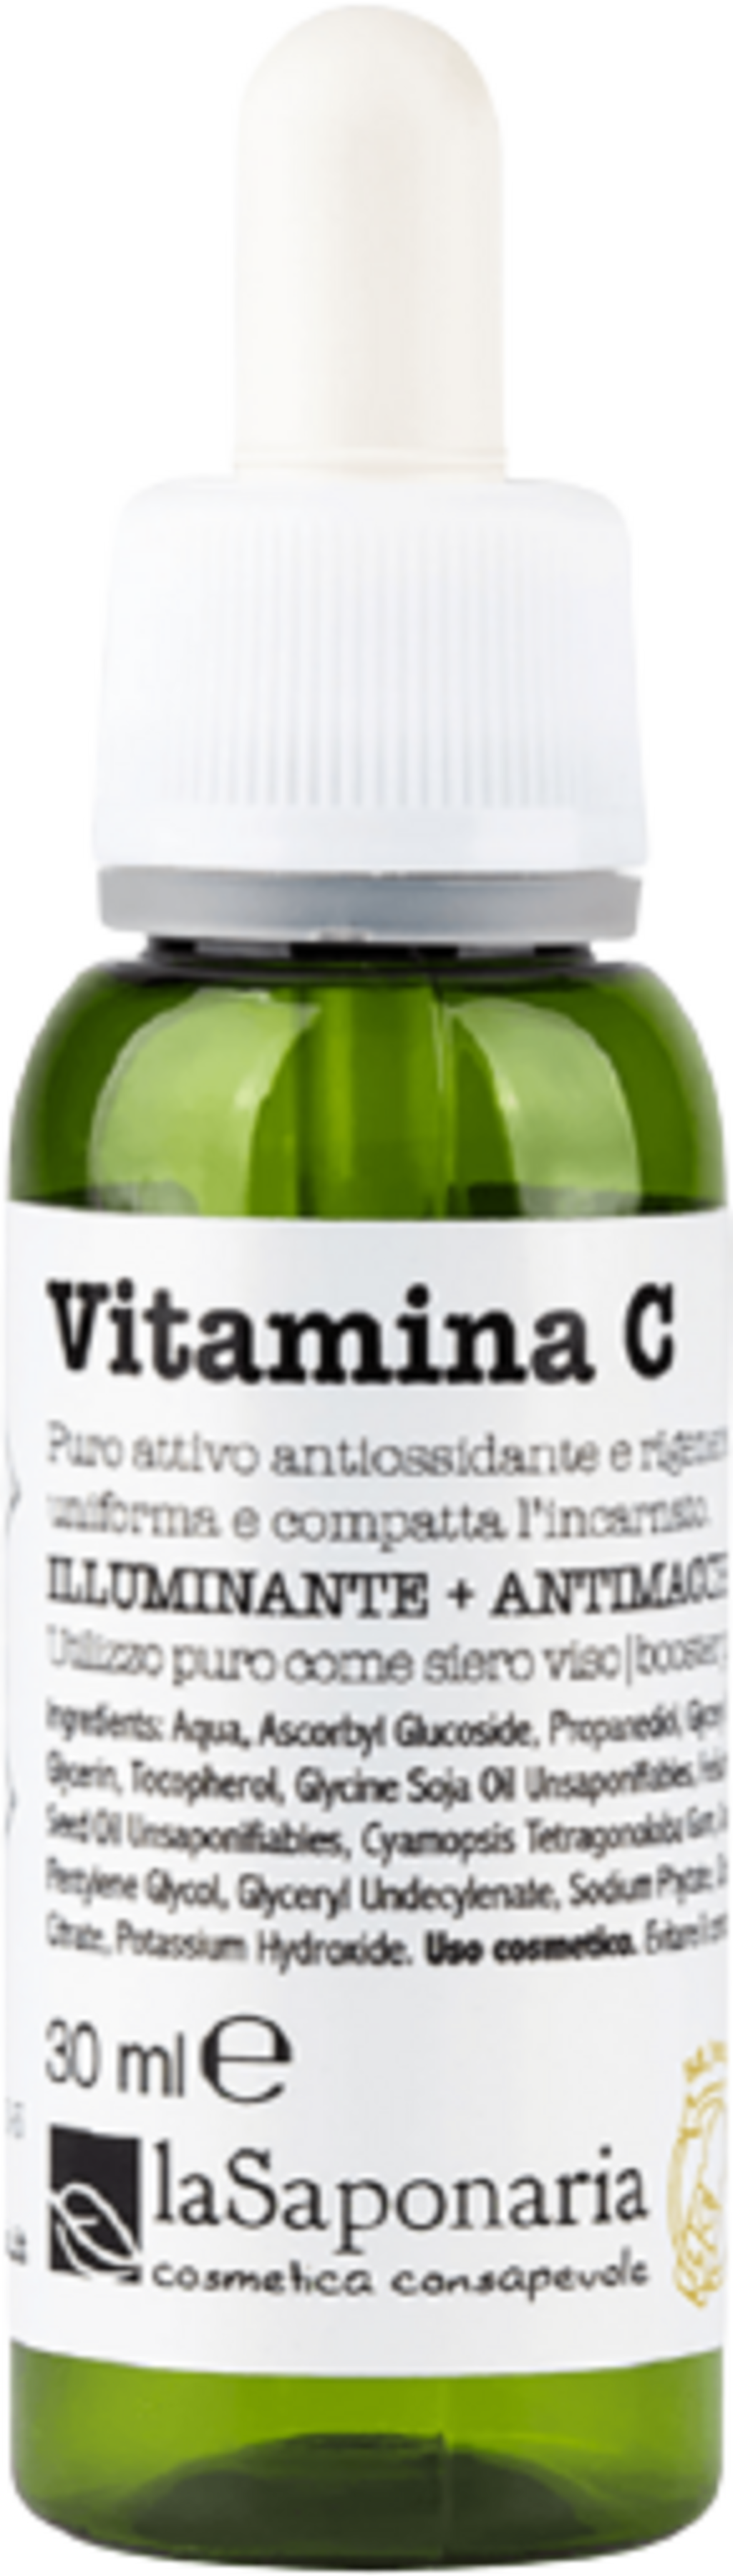 La Saponaria Vitamina C - 30 ml